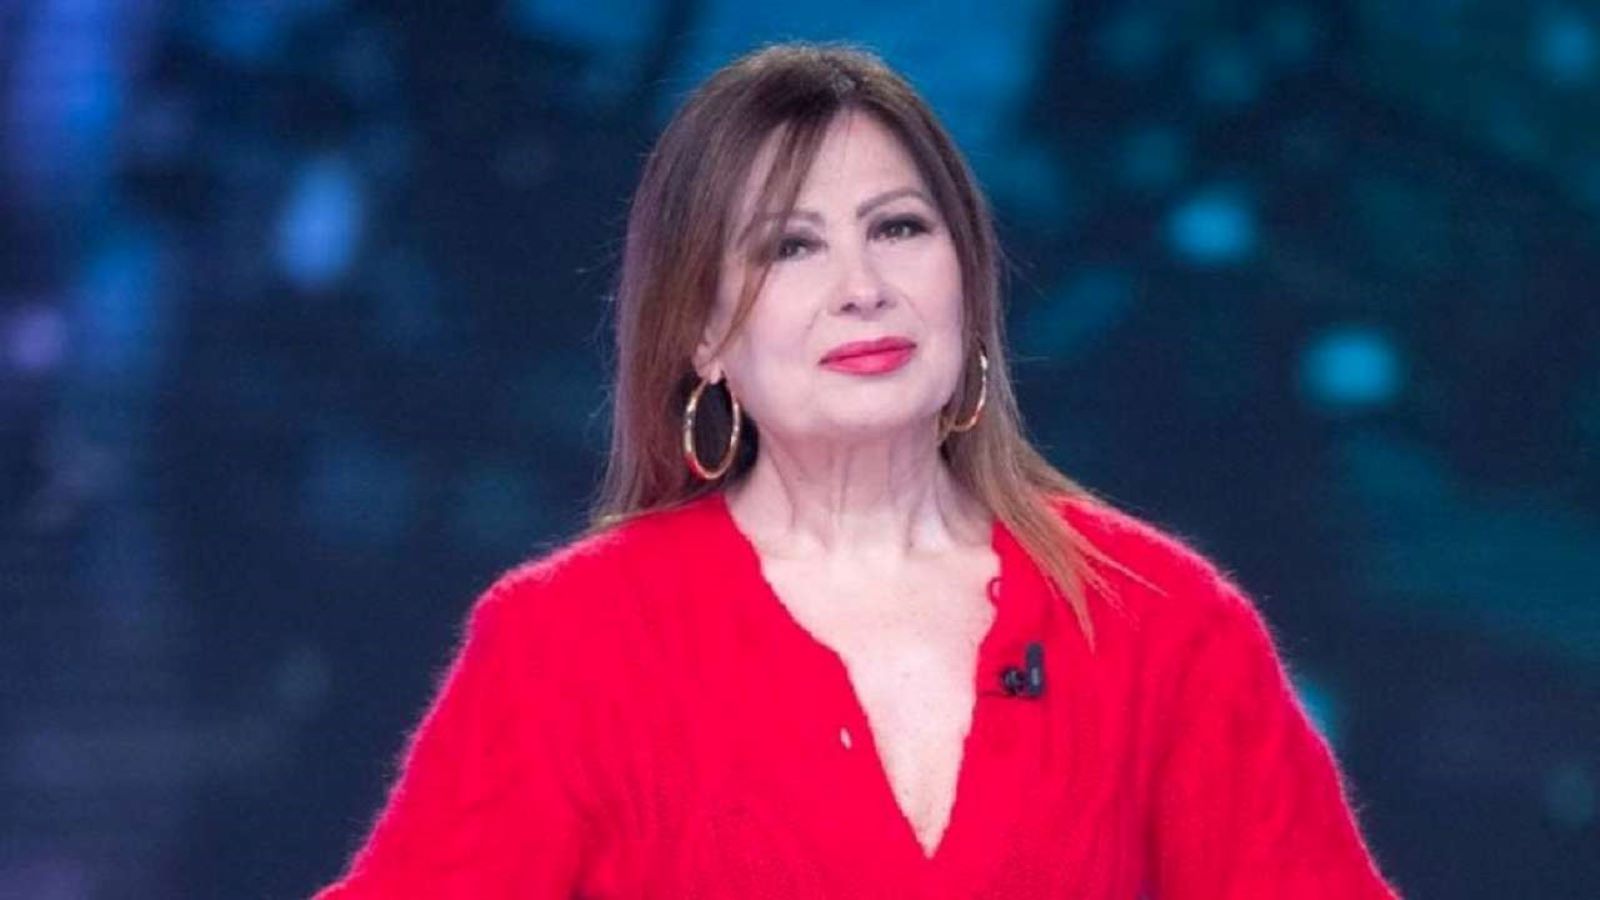 Rosanna Fratello contro Ornella Vanoni: 'Sei sempre stata come la regina cattiva, quella di Biancaneve'